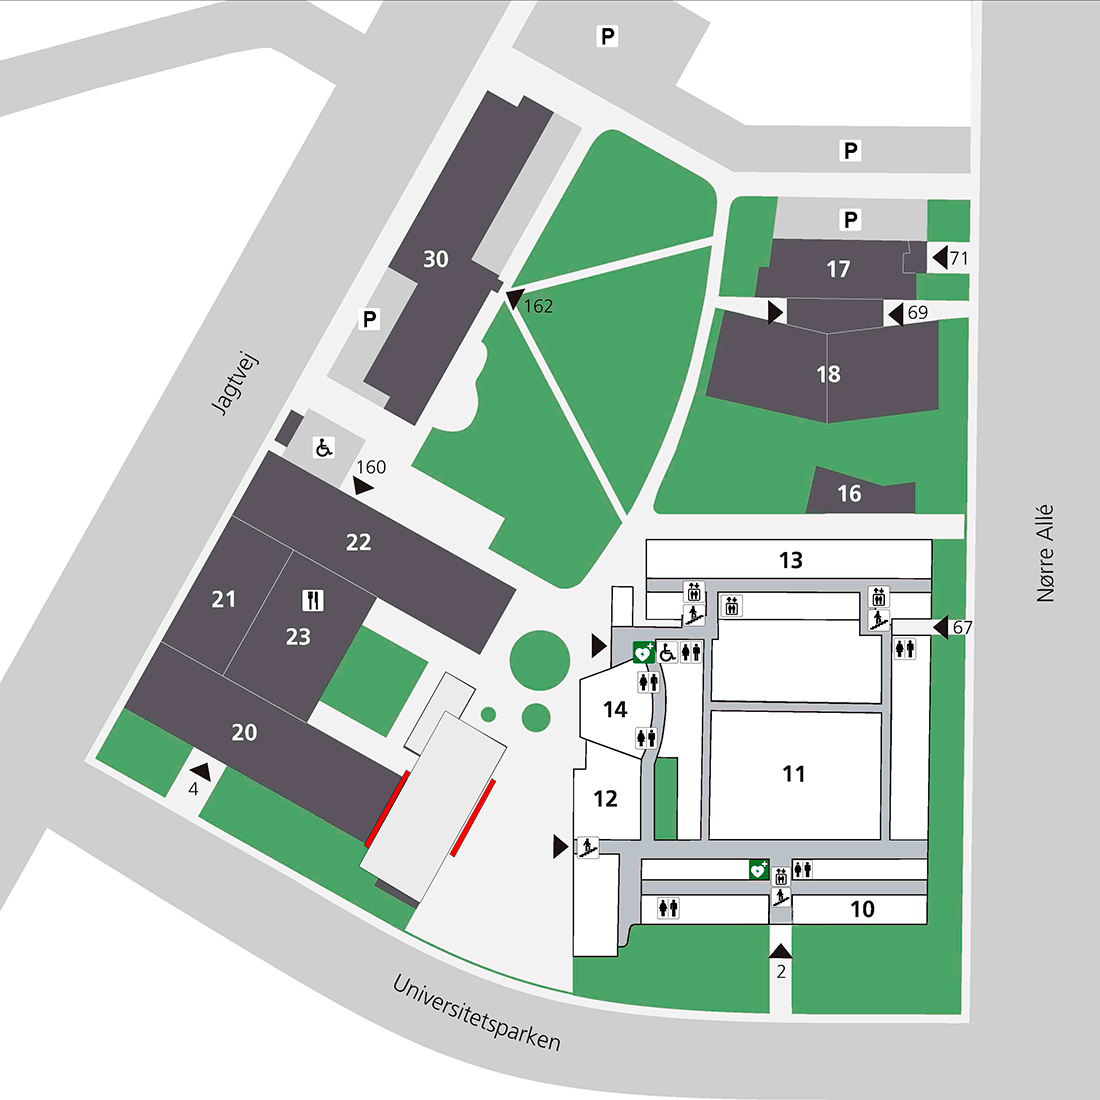 Map over buildings at PharmaSchool